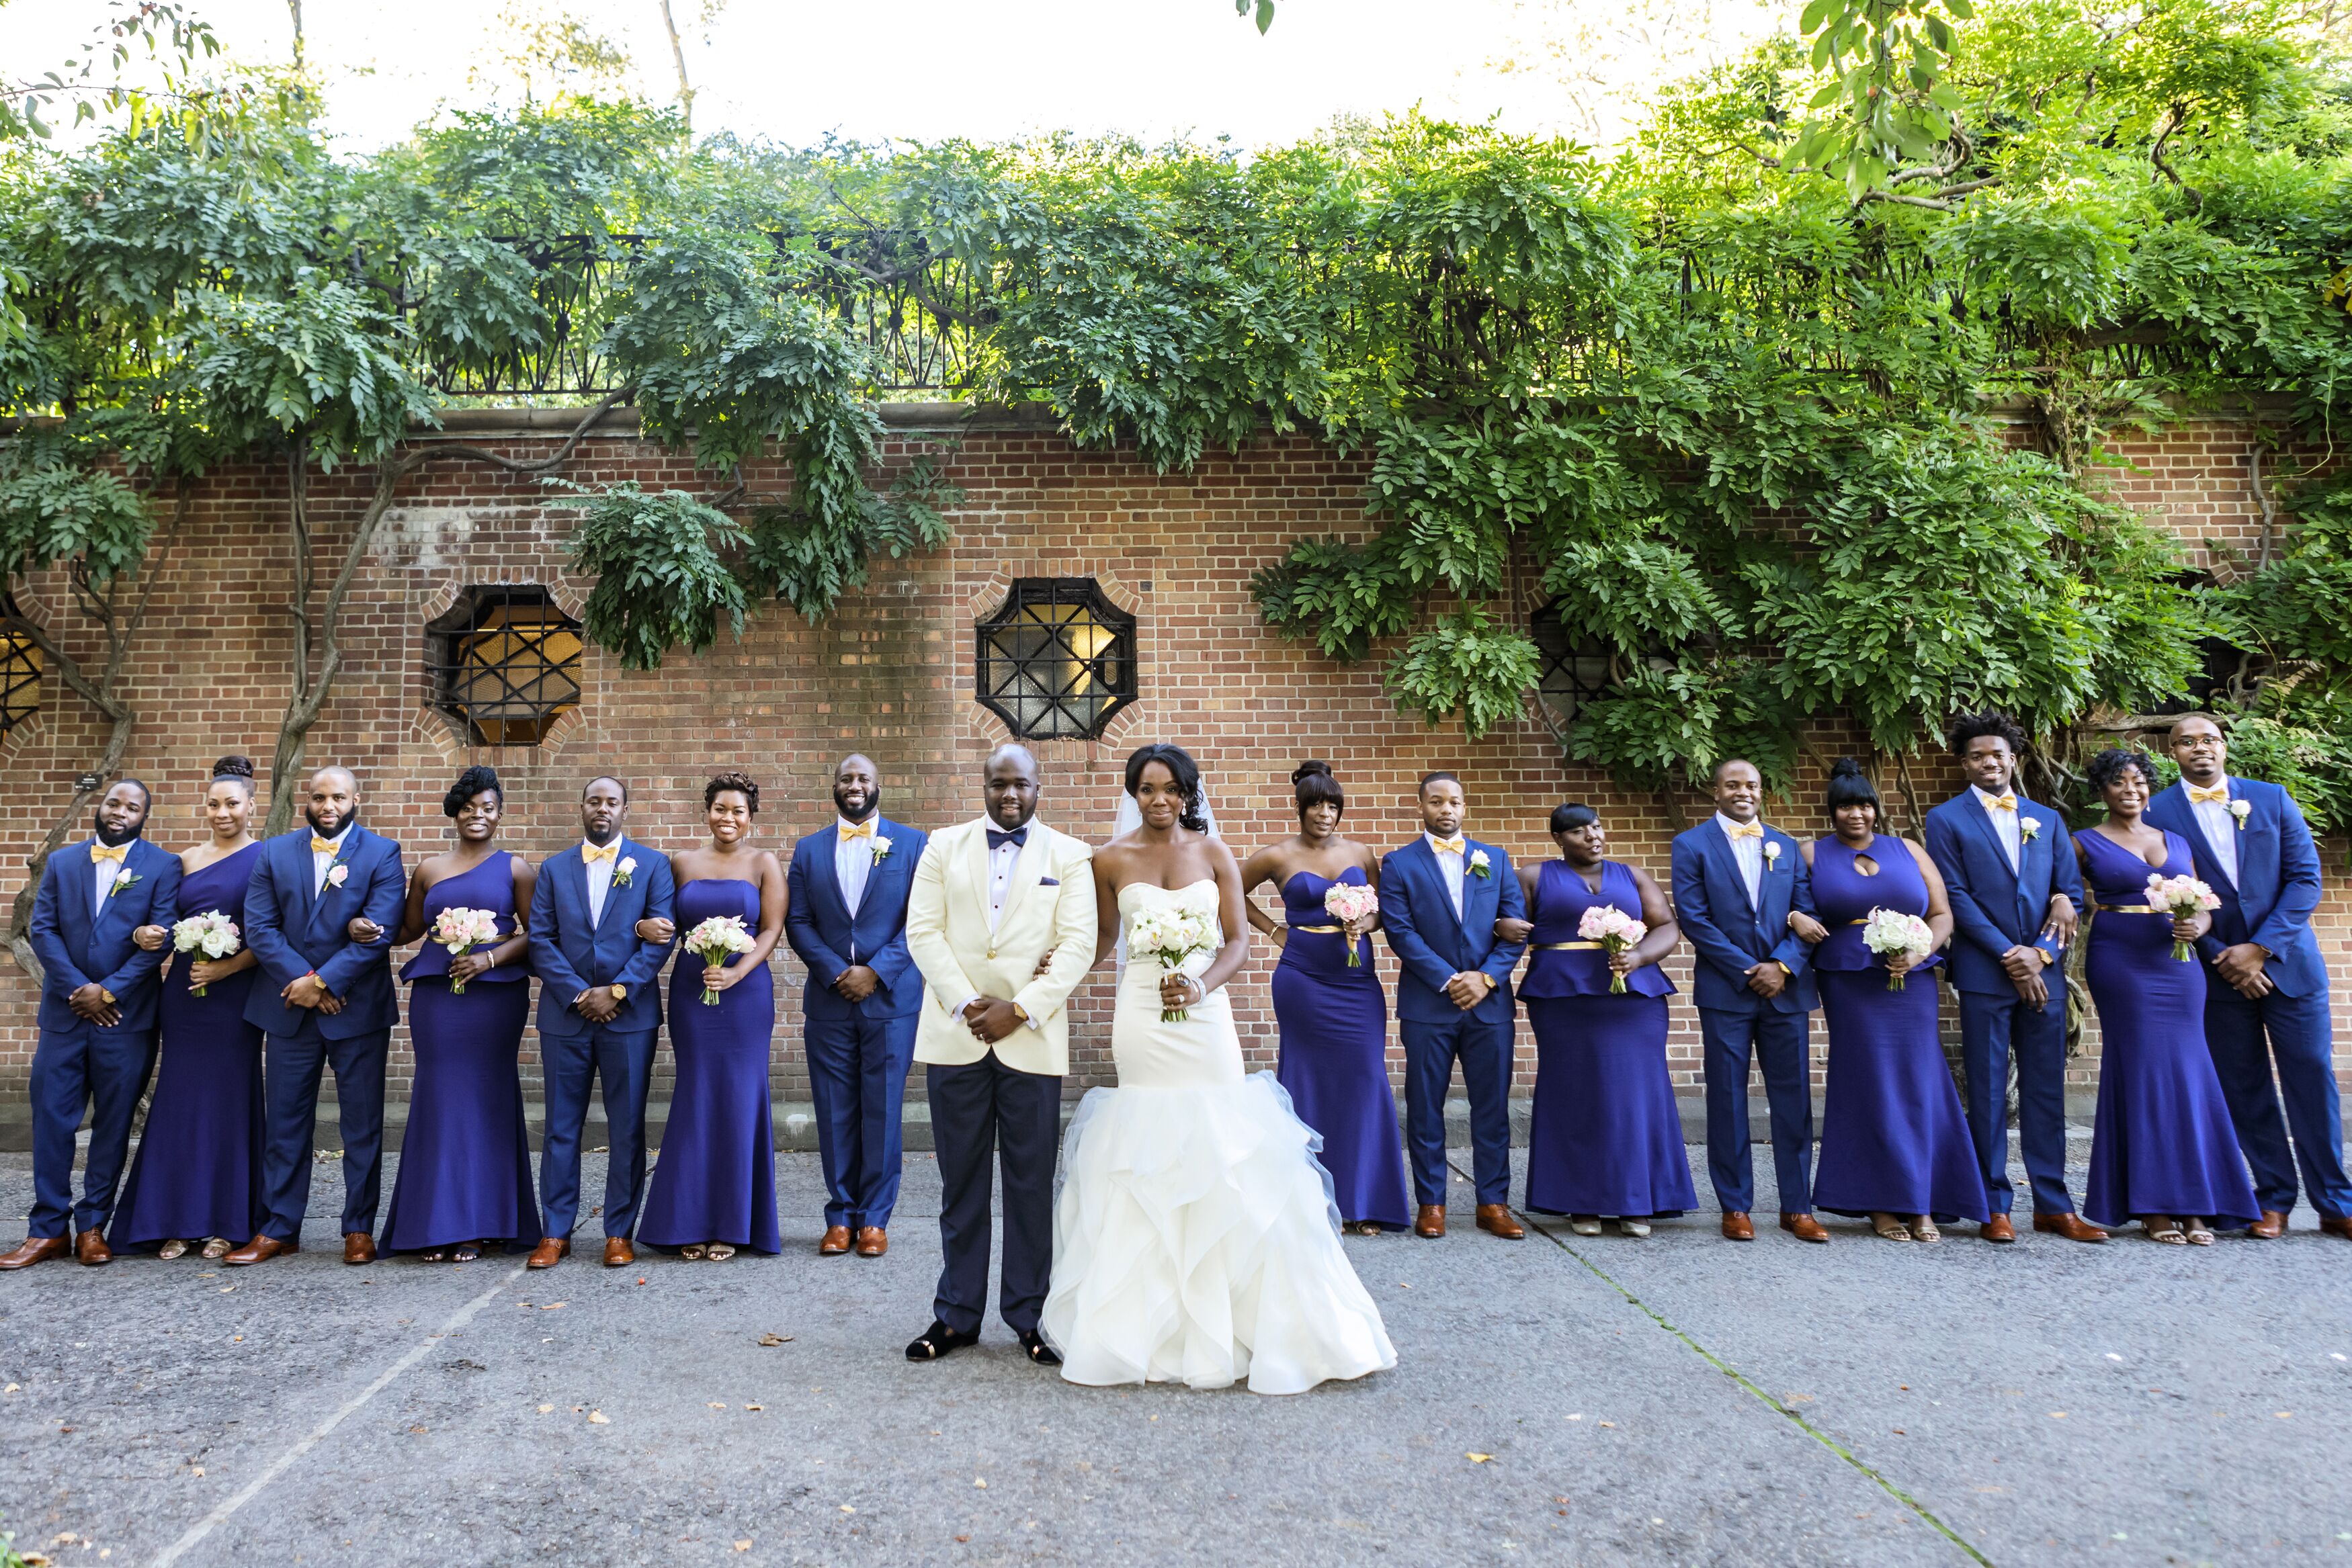 royal blue wedding reception dress